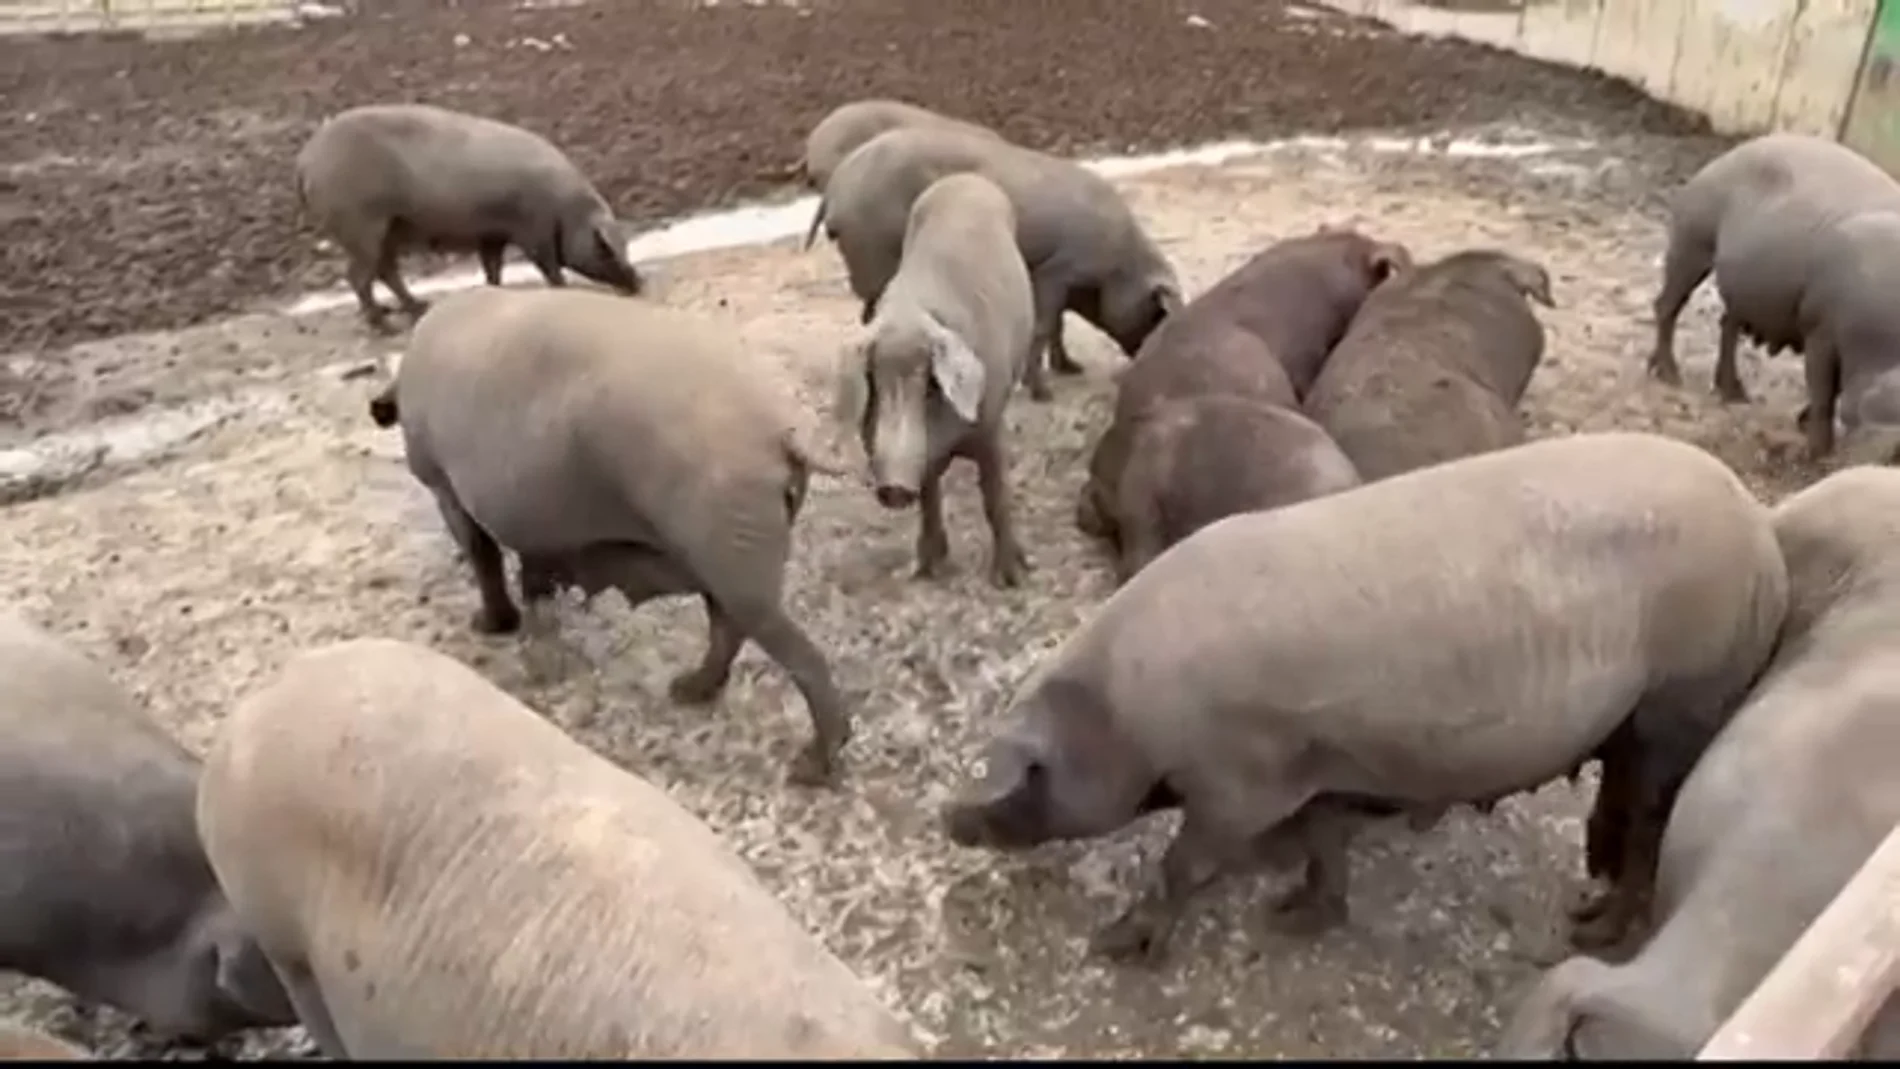 Canibalismo entre cerdos ante la falta de pienso por la huelga de transporte